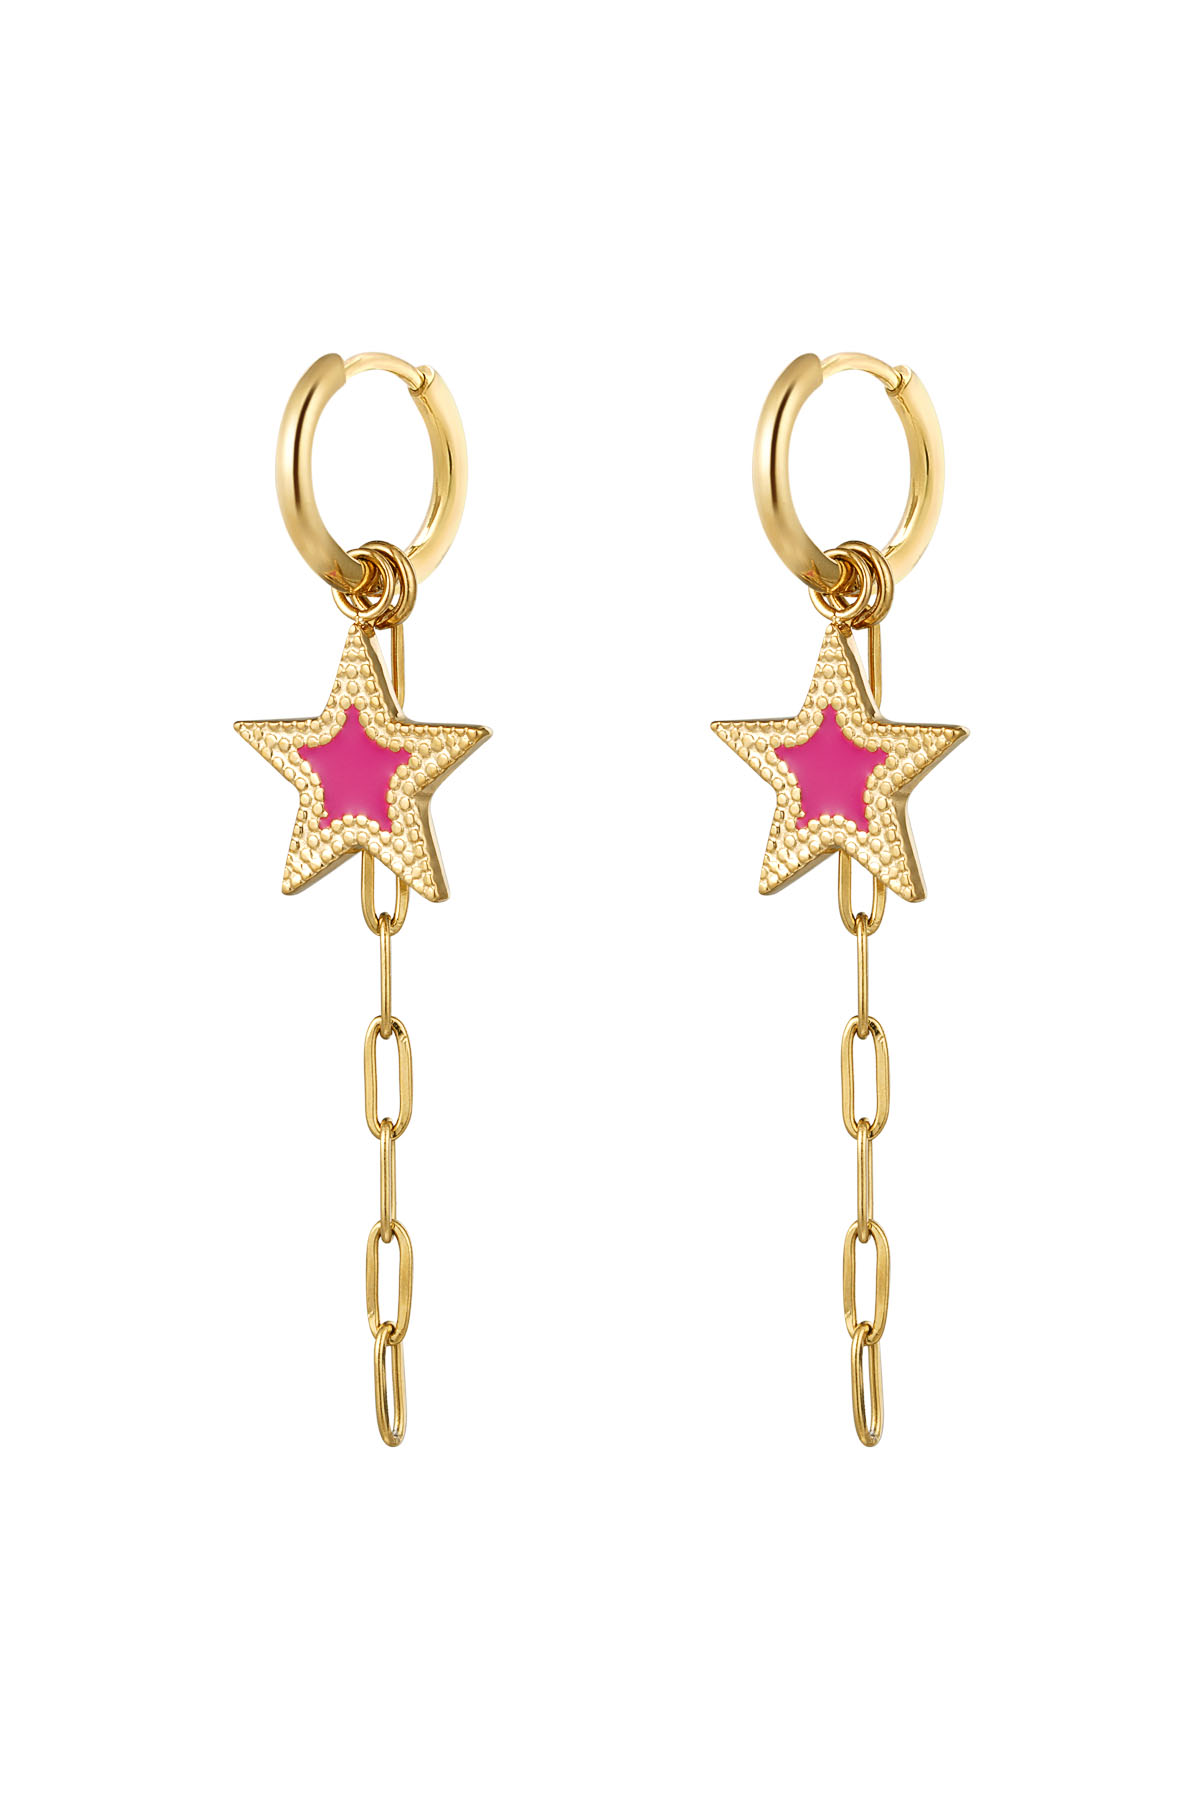 boucles d'oreilles avec étoile et collier rose - or